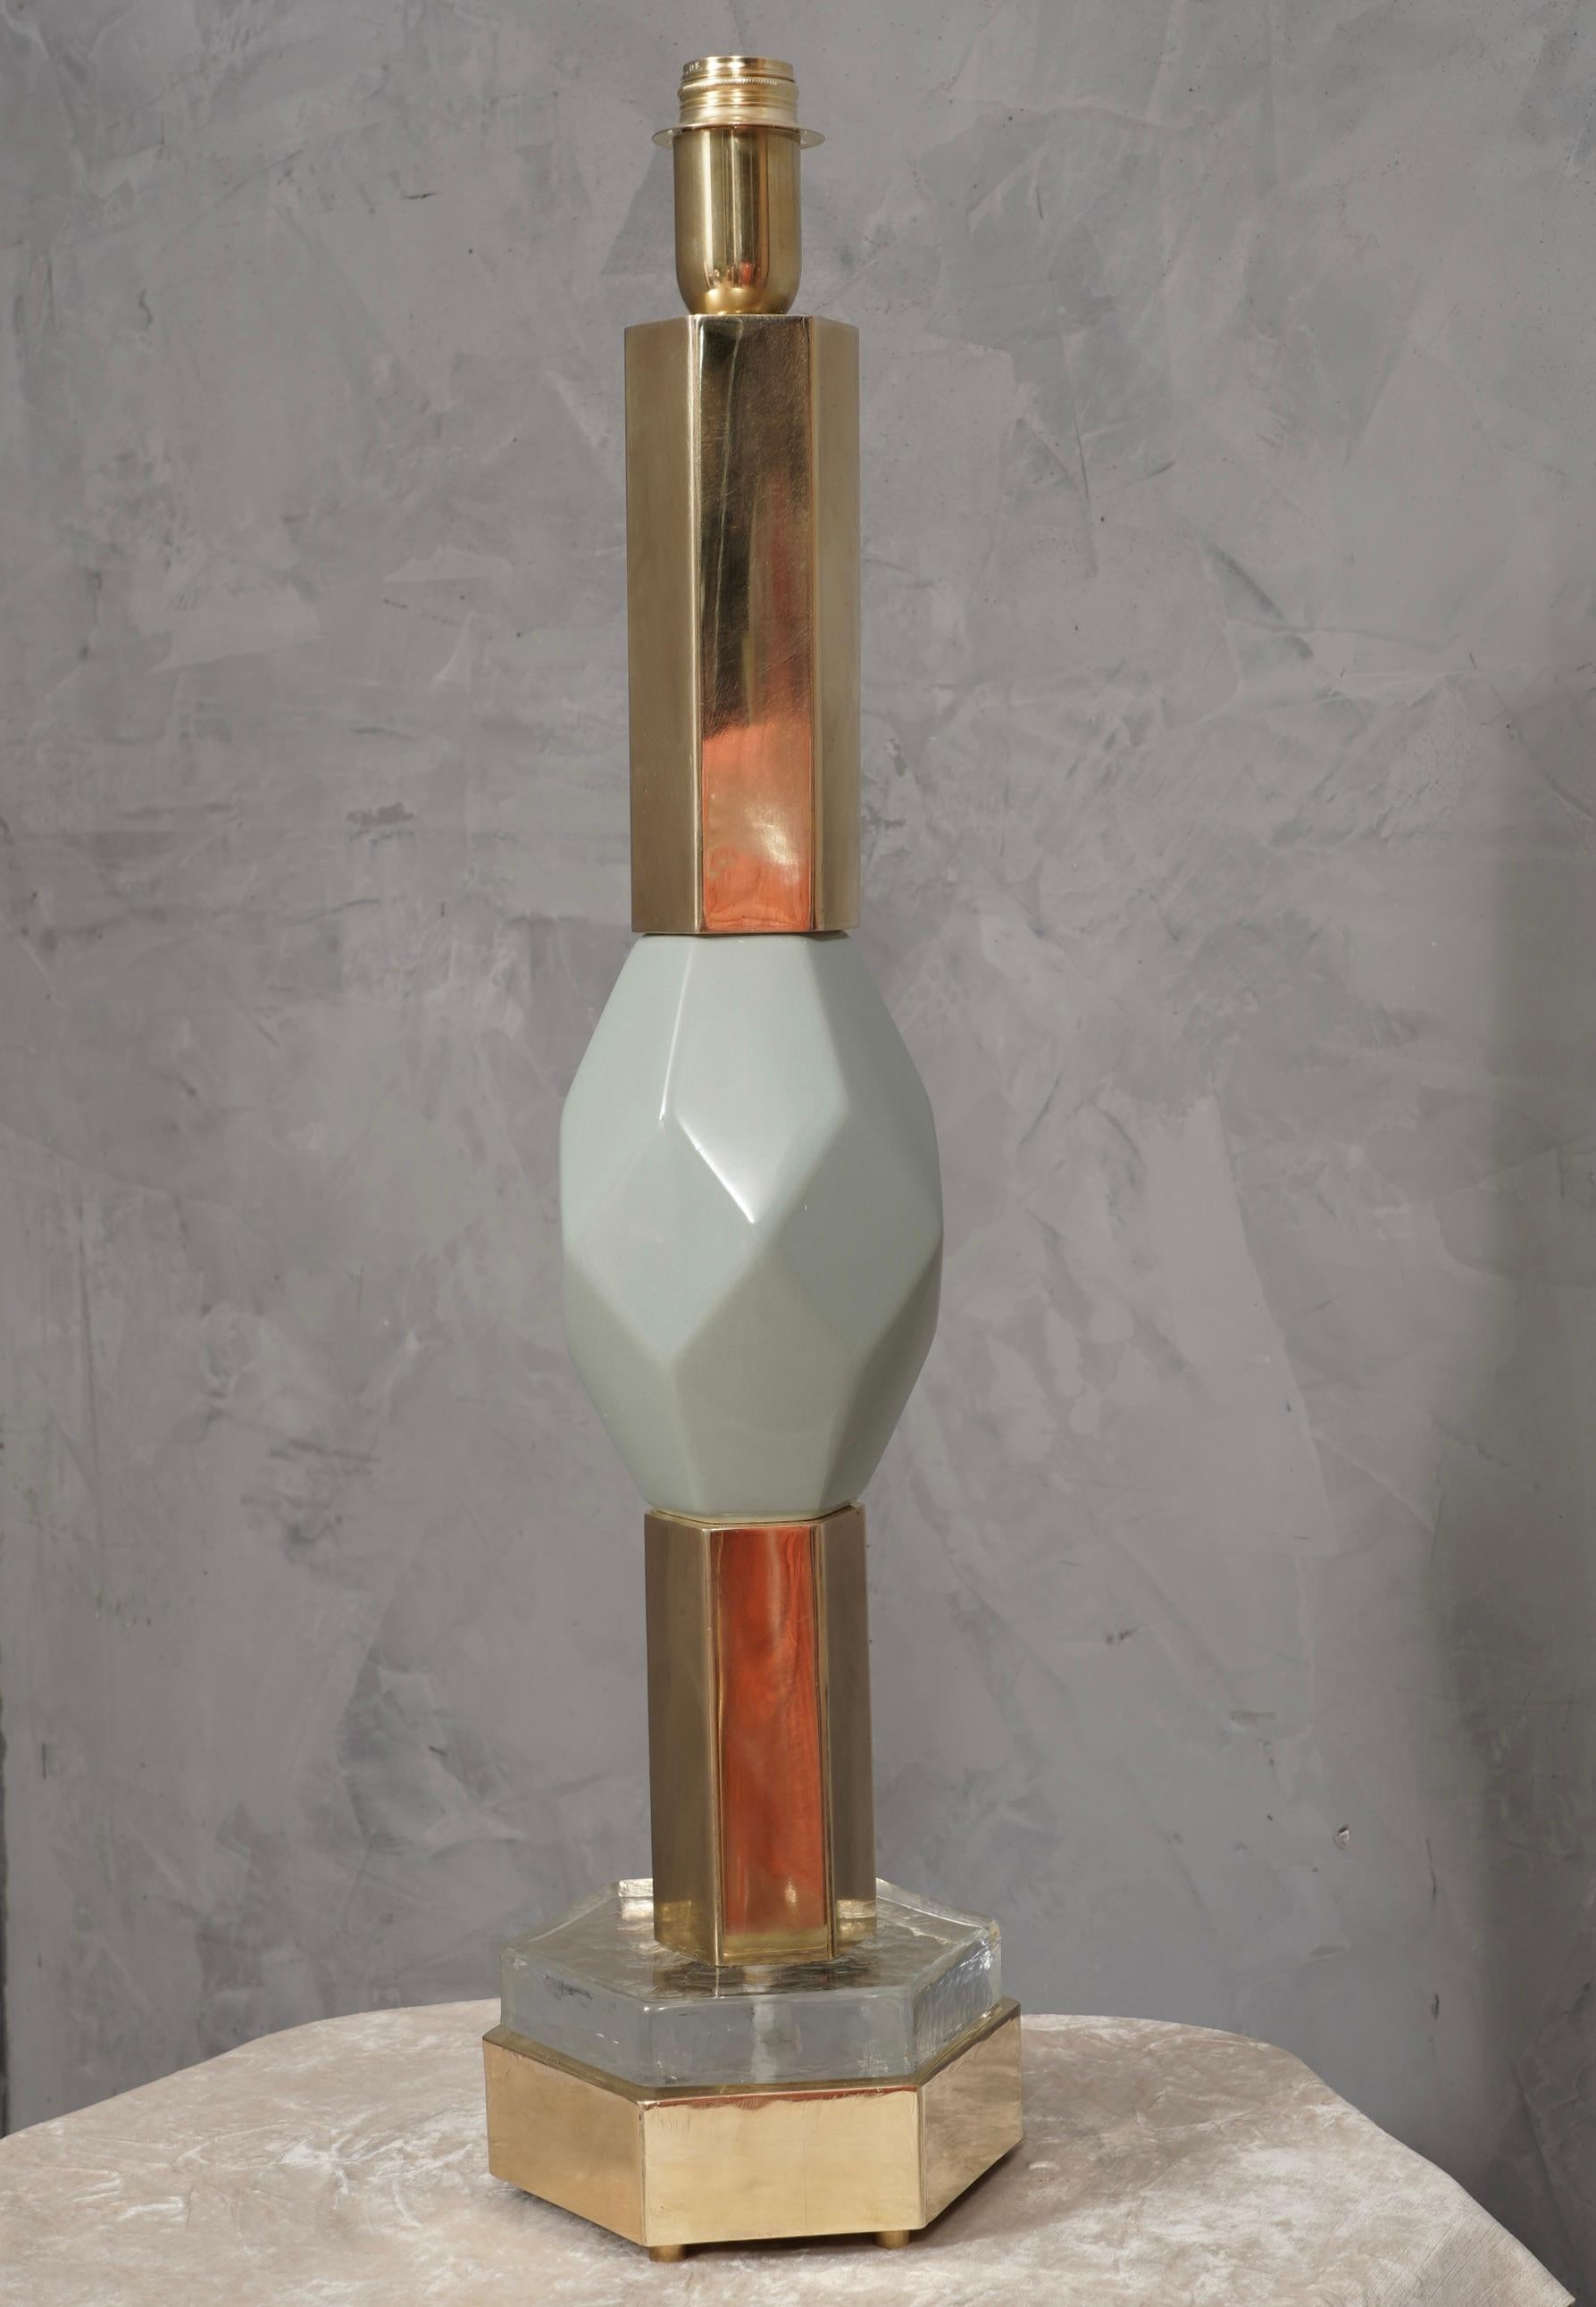 Une lampe de table très spéciale et originale de Murano, un prisme est inséré entre deux grands tubes hexagonaux en laiton, de couleur sarcelle. Leur forme est très fascinante.

La lampe est composée d'un prisme central, placé au-dessus et